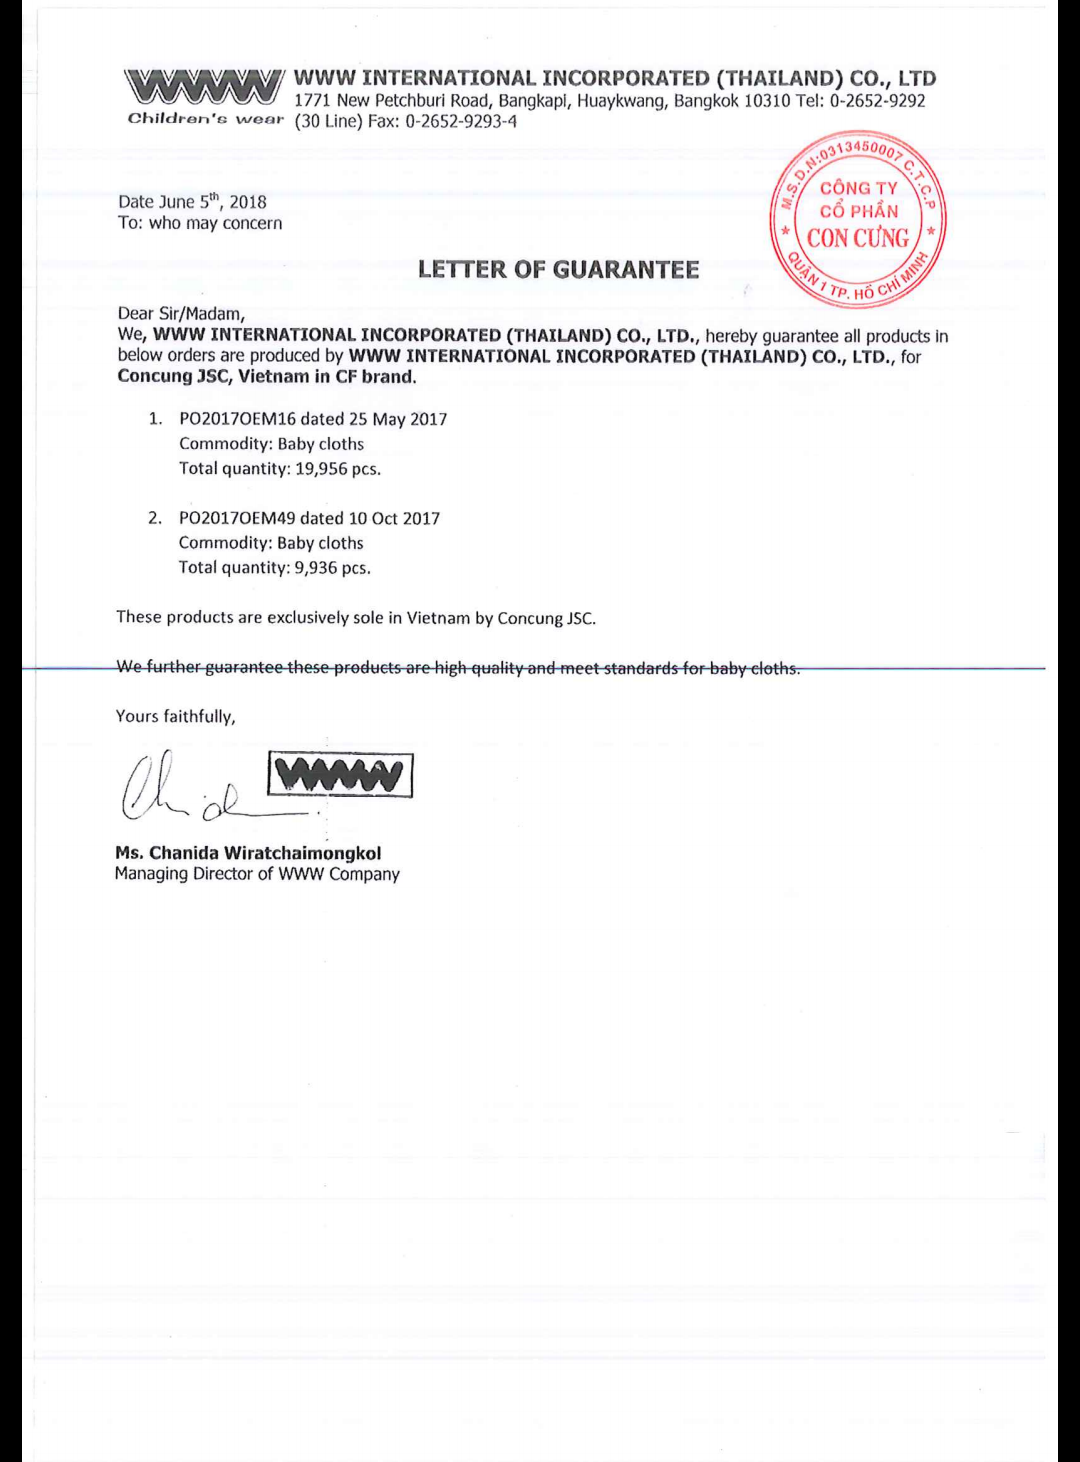 Theo Con Cưng, đây là thư xác nhận của Nhà cung cấp về đơn đặt hàng theo thương hiệu CF Con Cưng